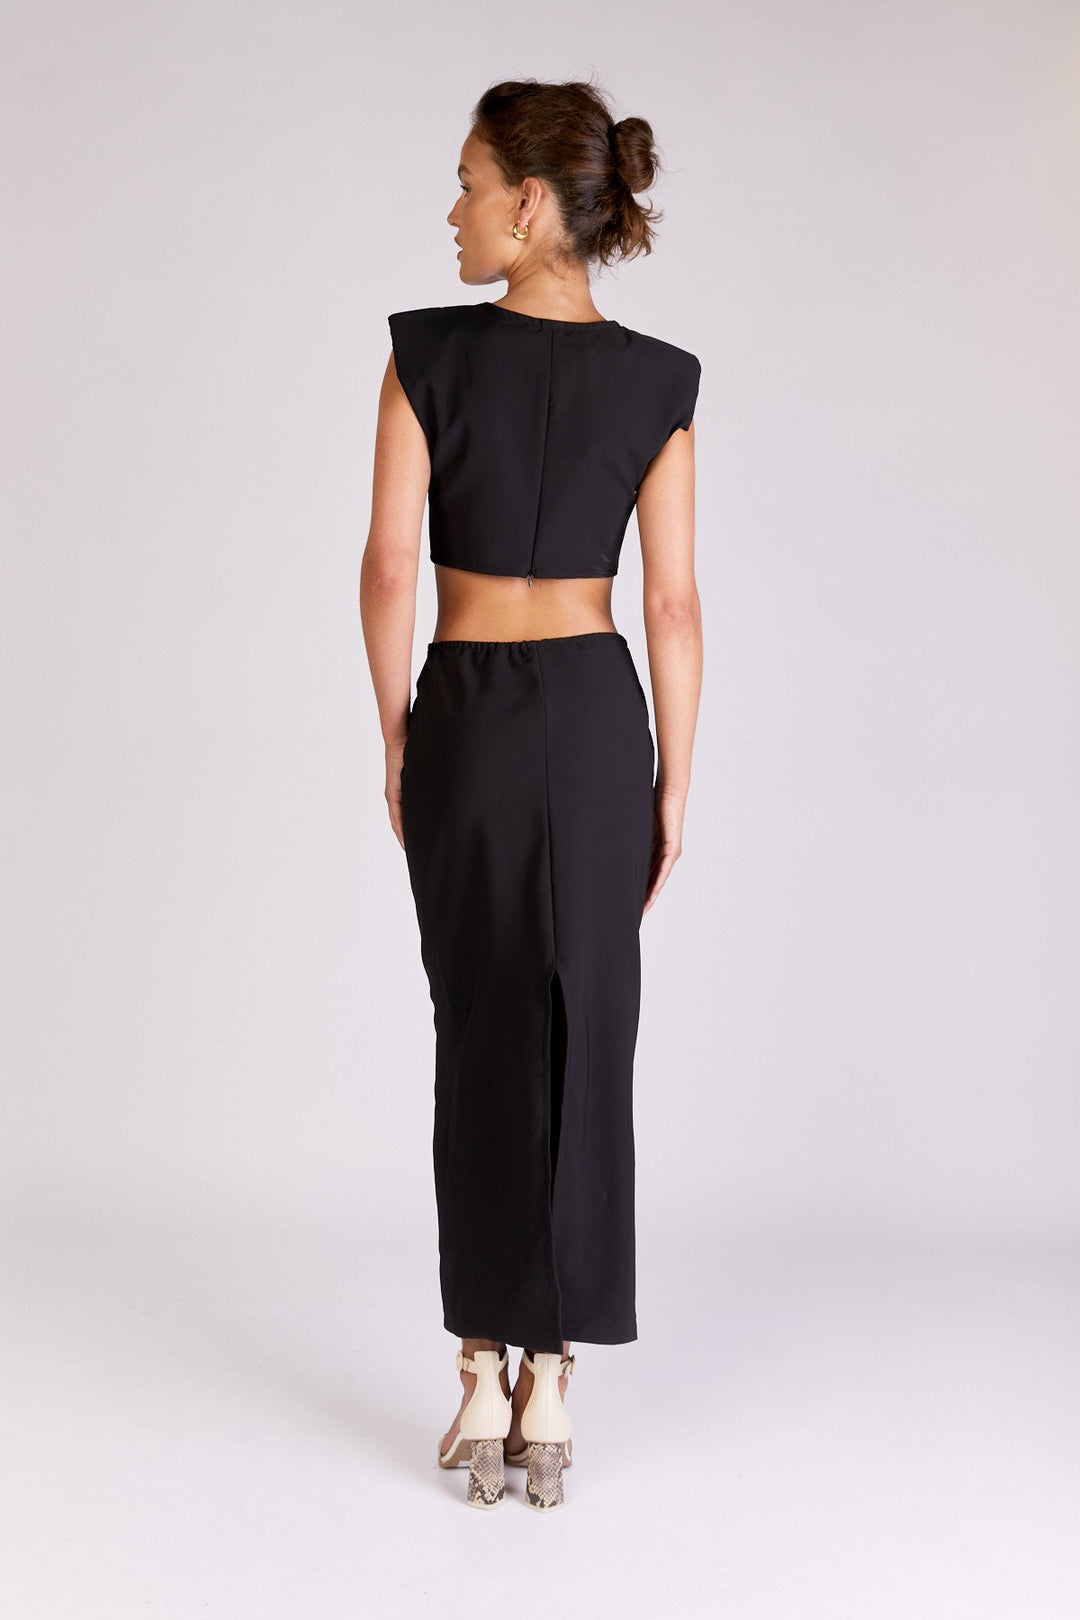 שמלת קיילי בצבע שחור - Dana Sidi